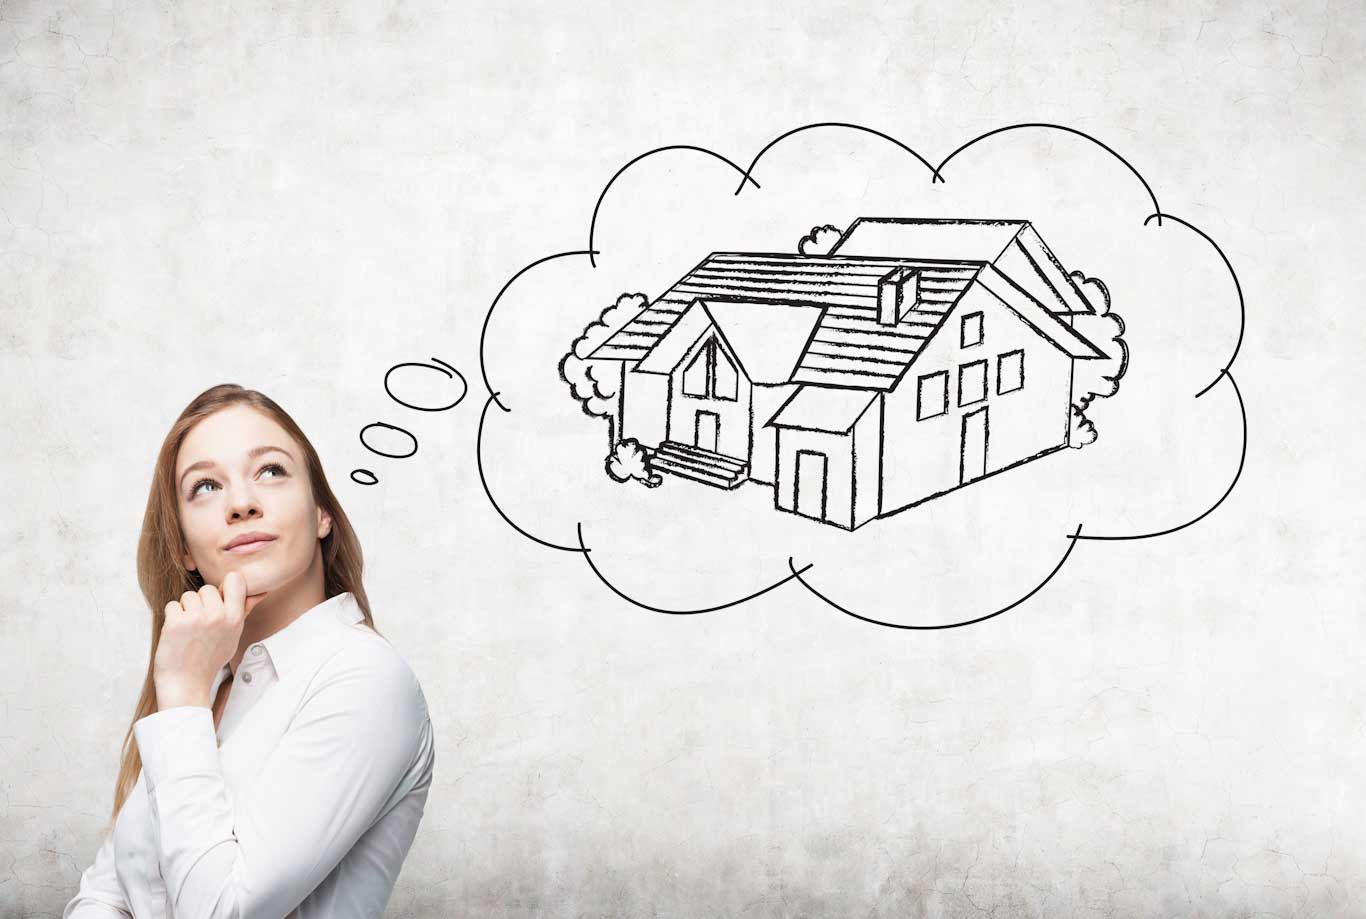 Una ragazza con lo sguardo felice verso l'alto immagina la sua nuova casa, una villetta unifamiliare, qui rappresentata con uno schizzo a matita in modo stilizzato all'interno di una nuvola